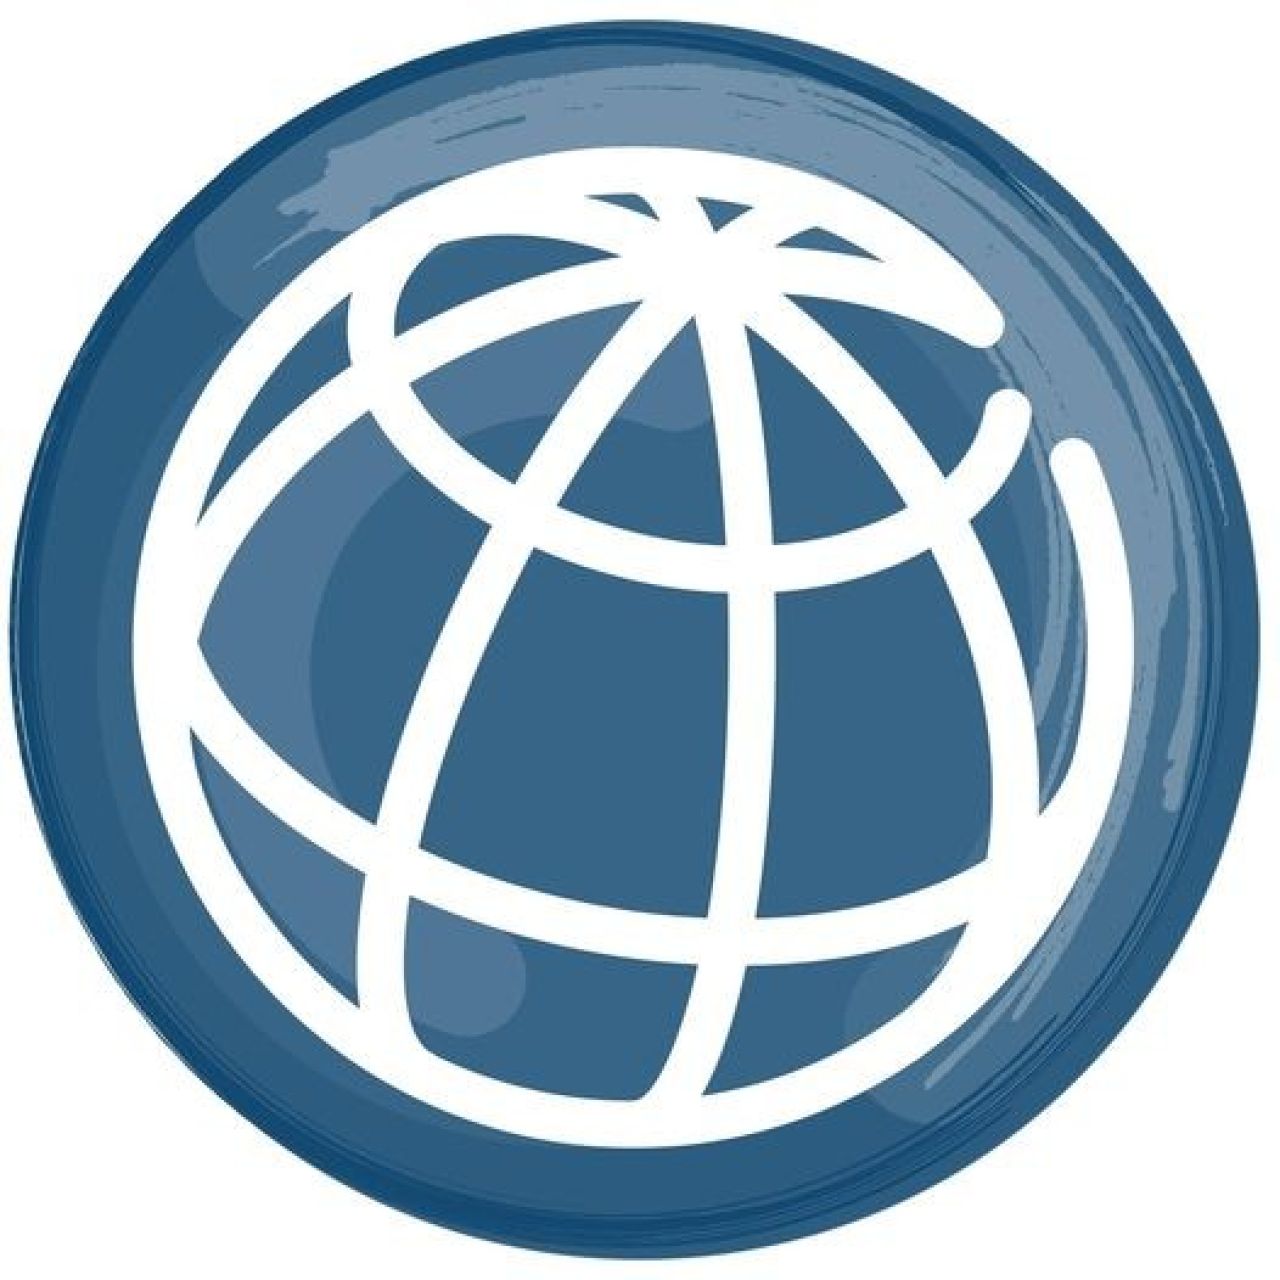 Կենտրոնական բանկը միացել է Համաշխարհային բանկի Պահուստների խորհրդատվական և կառավարման գործընկերության ծրագրին